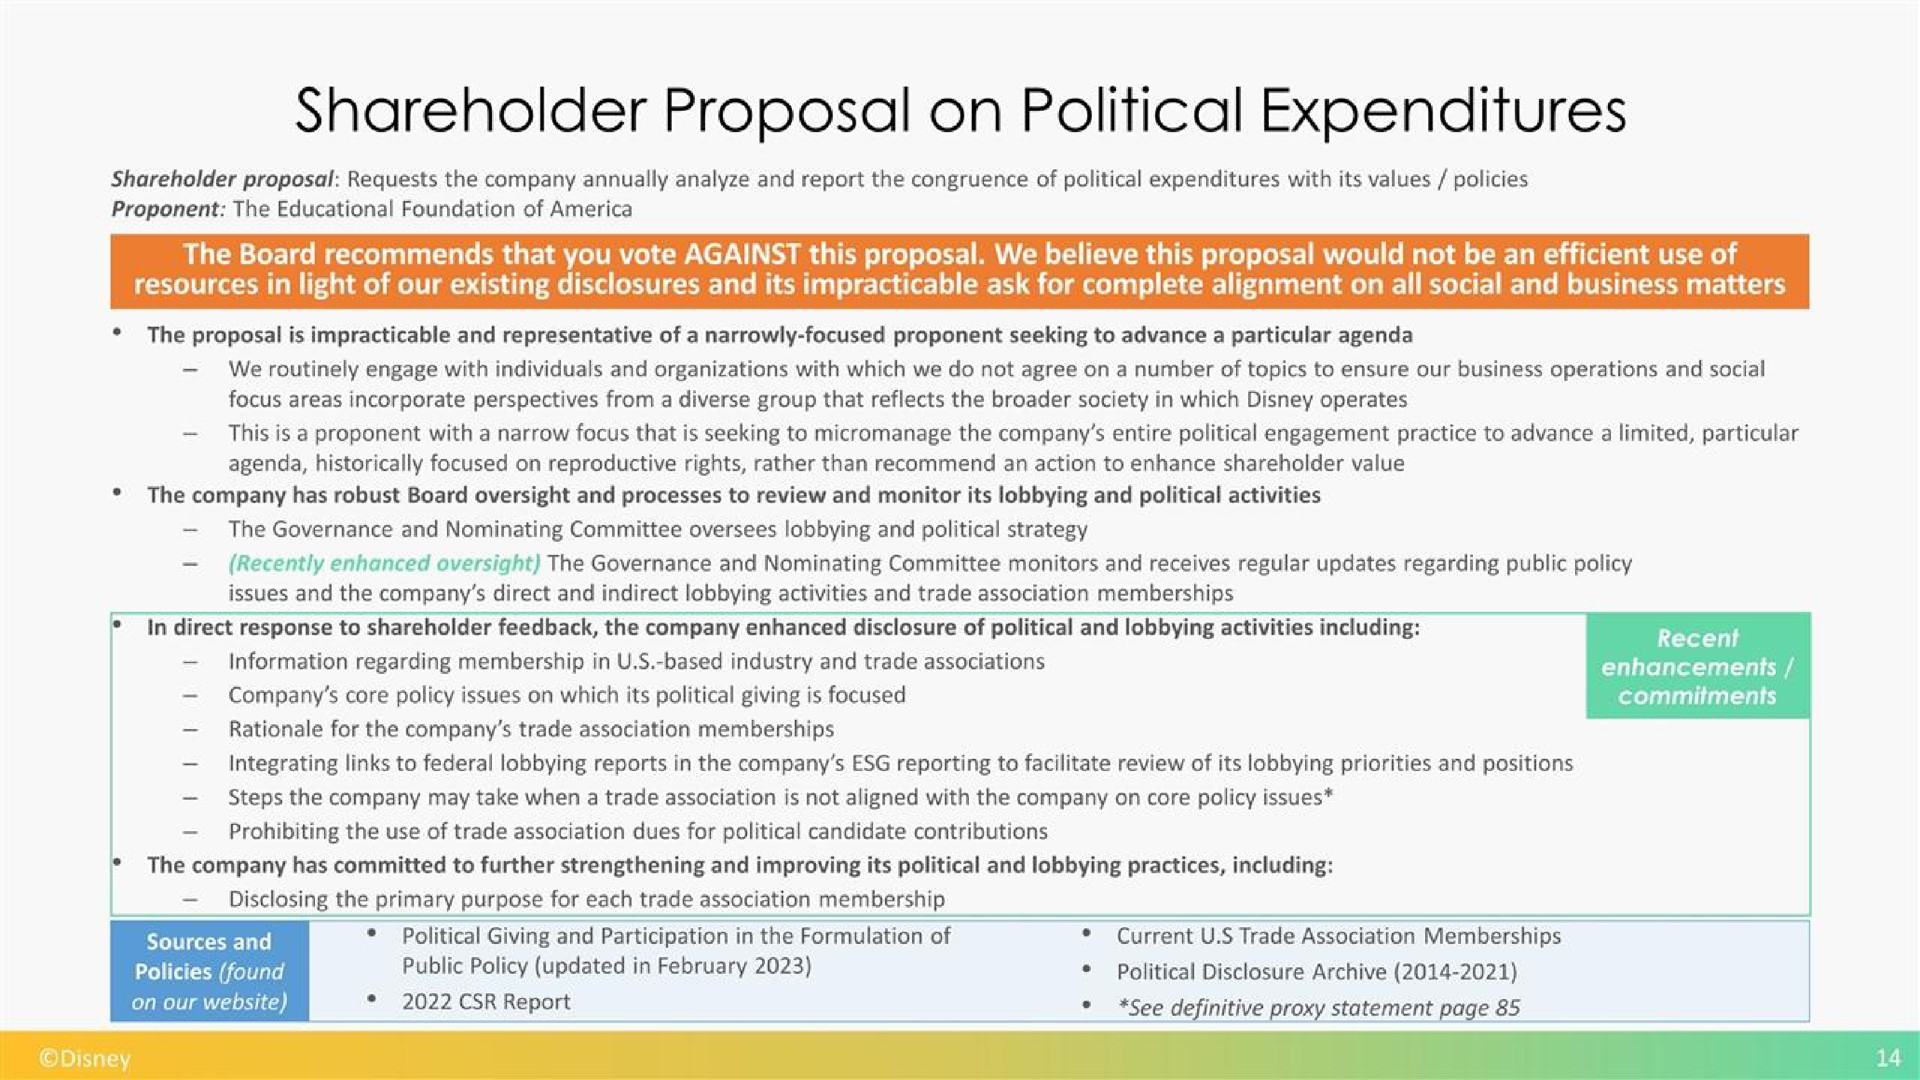 shareholder proposal on political expenditures | Disney